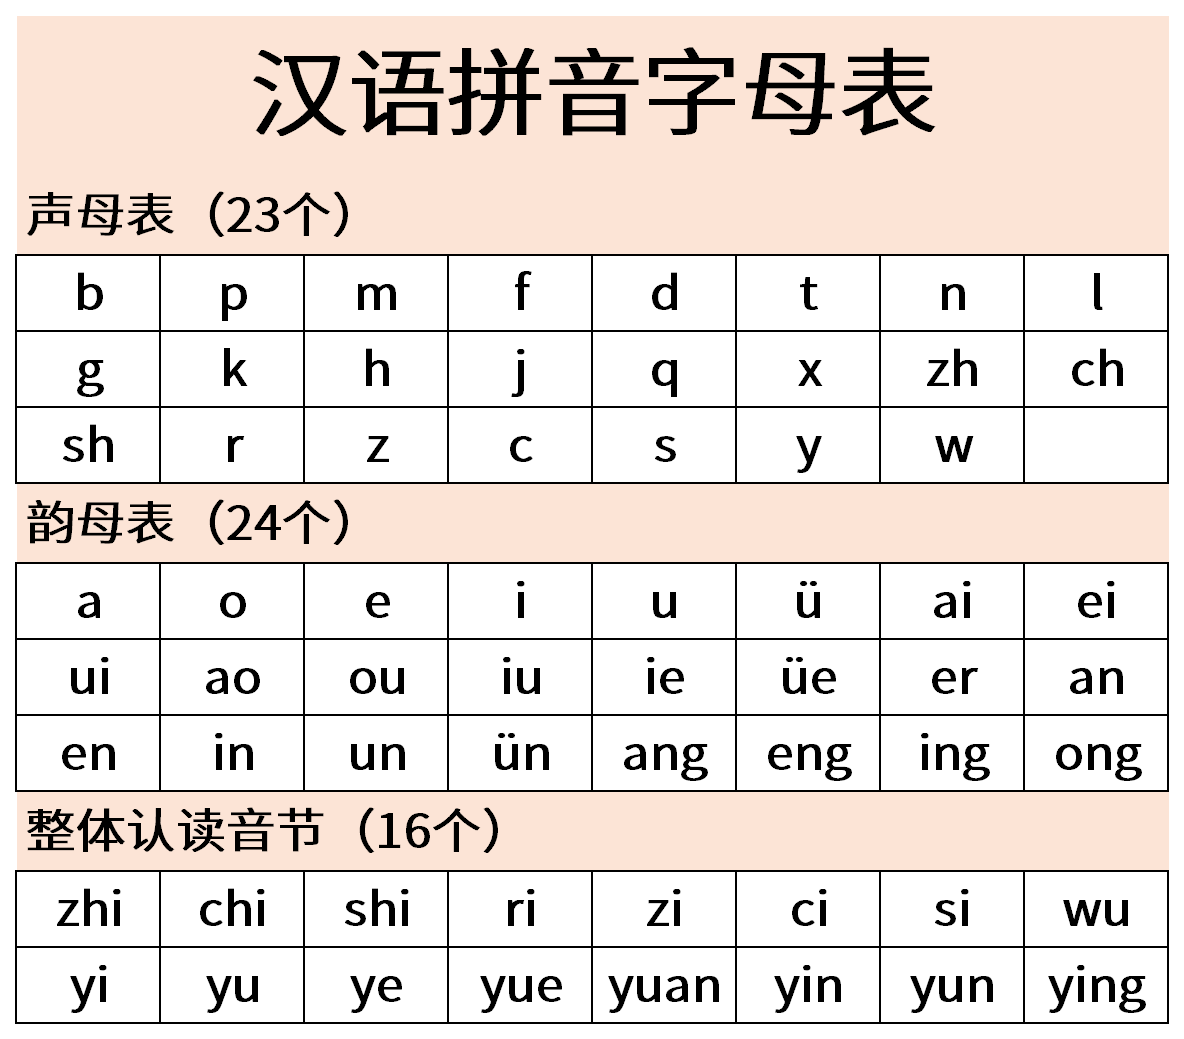 首页 软件下载  范文大全  办公文件  汉语拼音字母表